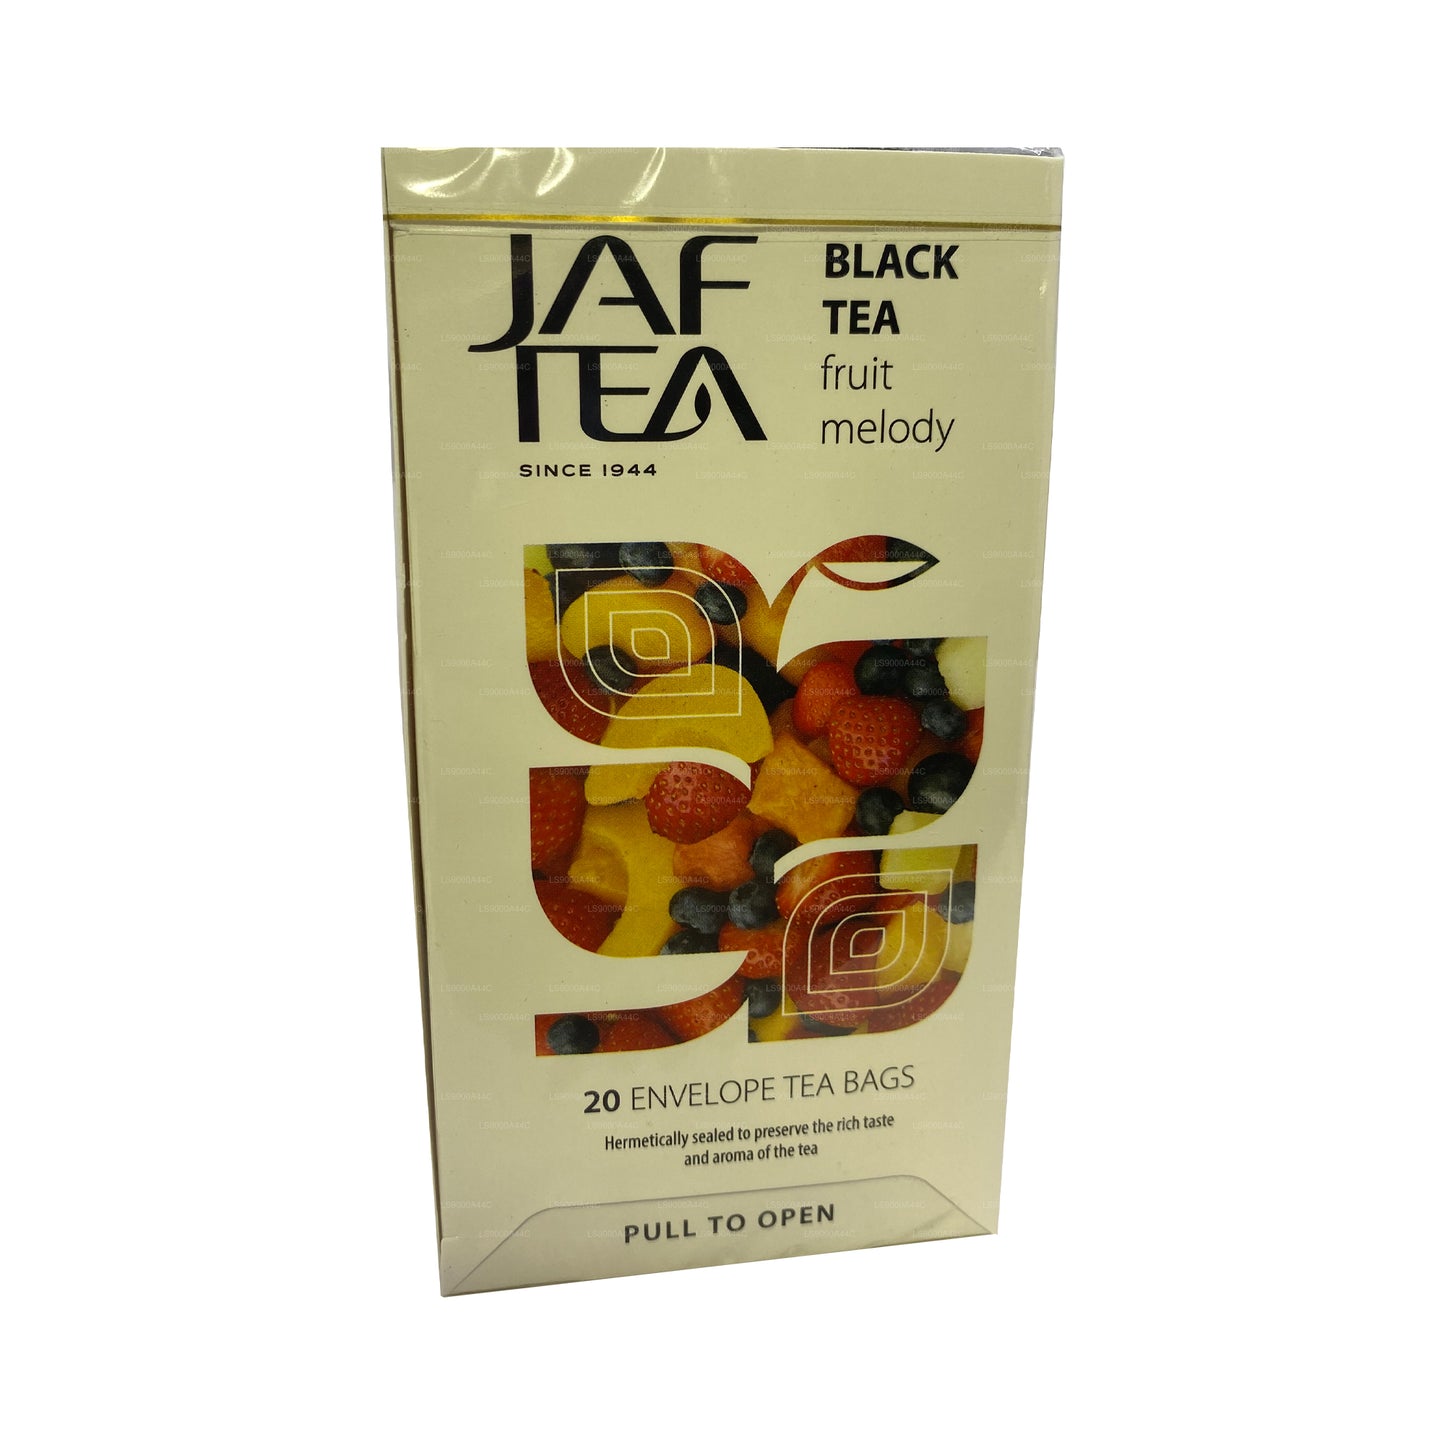 Jaf Tea Коллекция чистых фруктов Черный чай Фруктовая мелодия (30 г) 20 чайных пакетиков